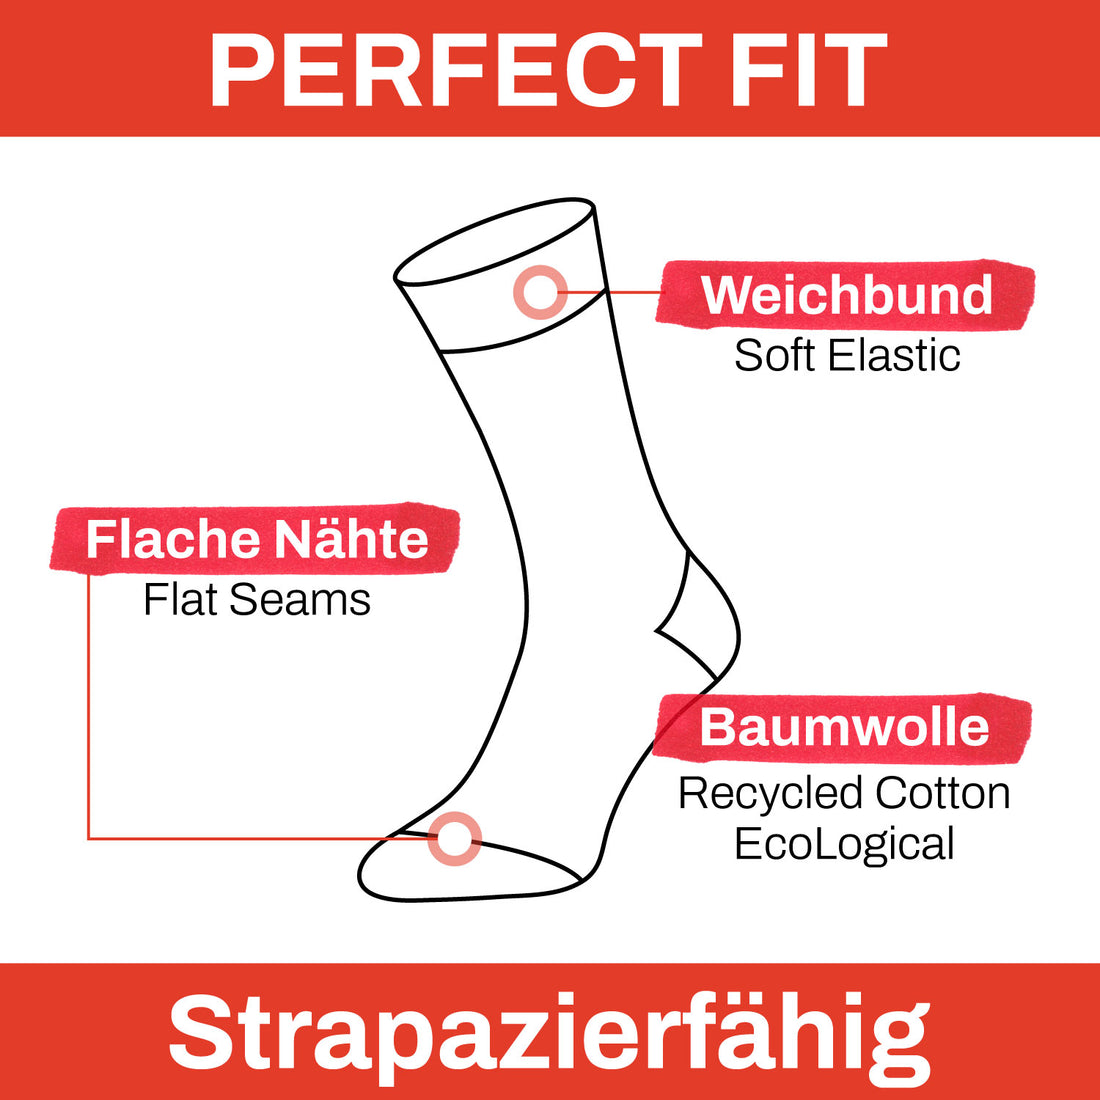 ChiliLifestyle Dr. Götz Lady Diamond Socken, 4 Paar, für Damen